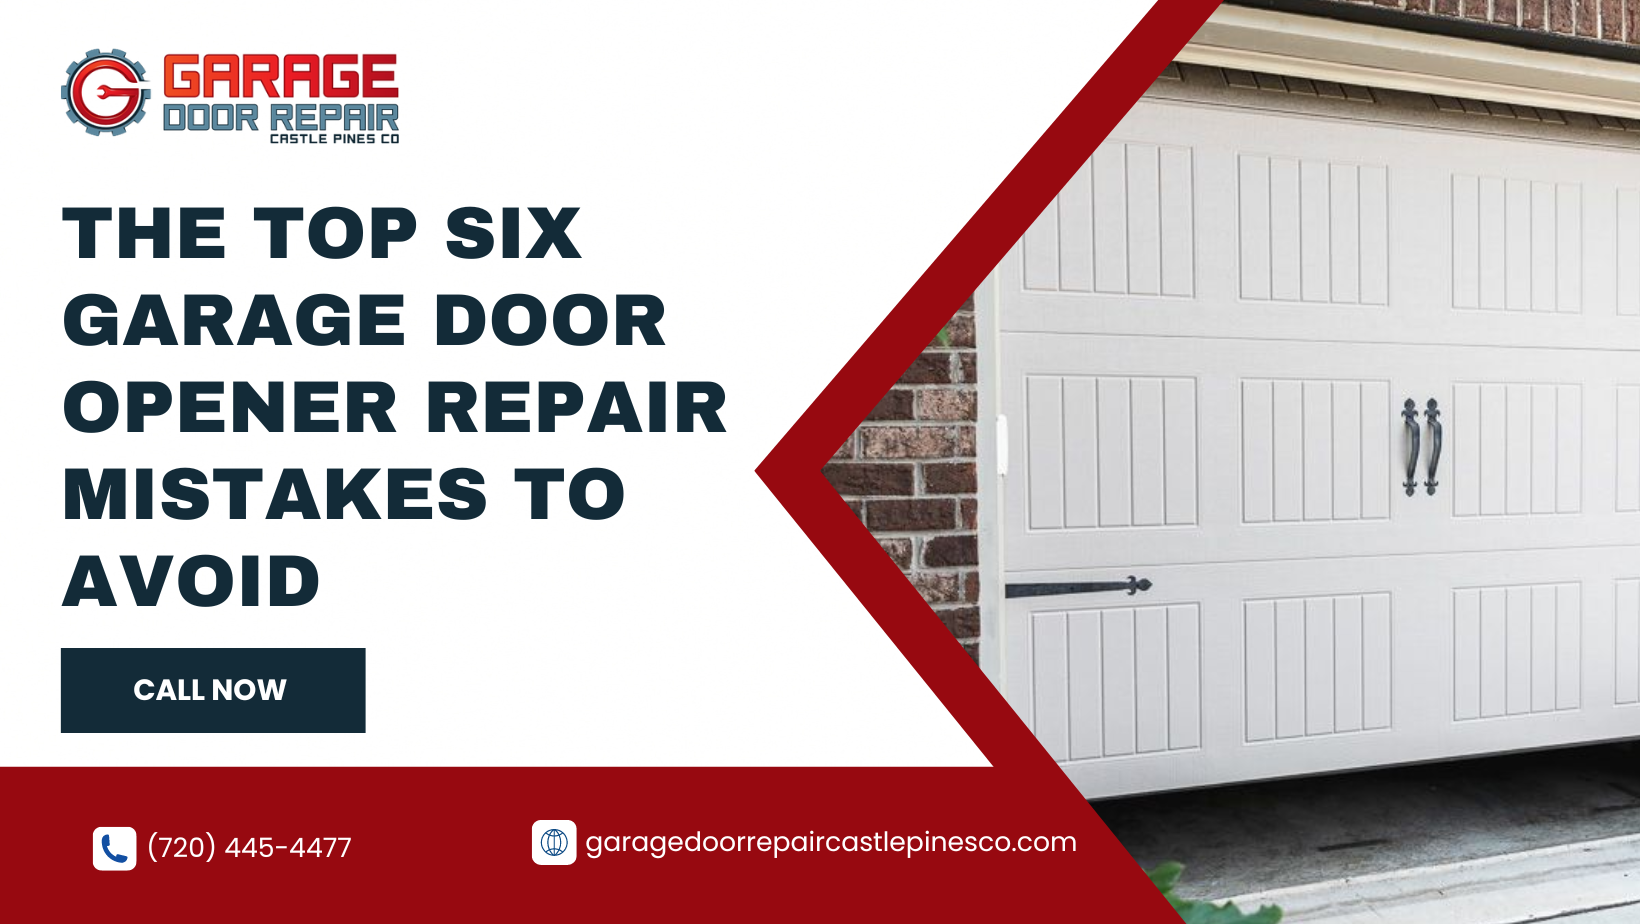 The Top Six Garage Door Opener Repair Mistakes to Avoid